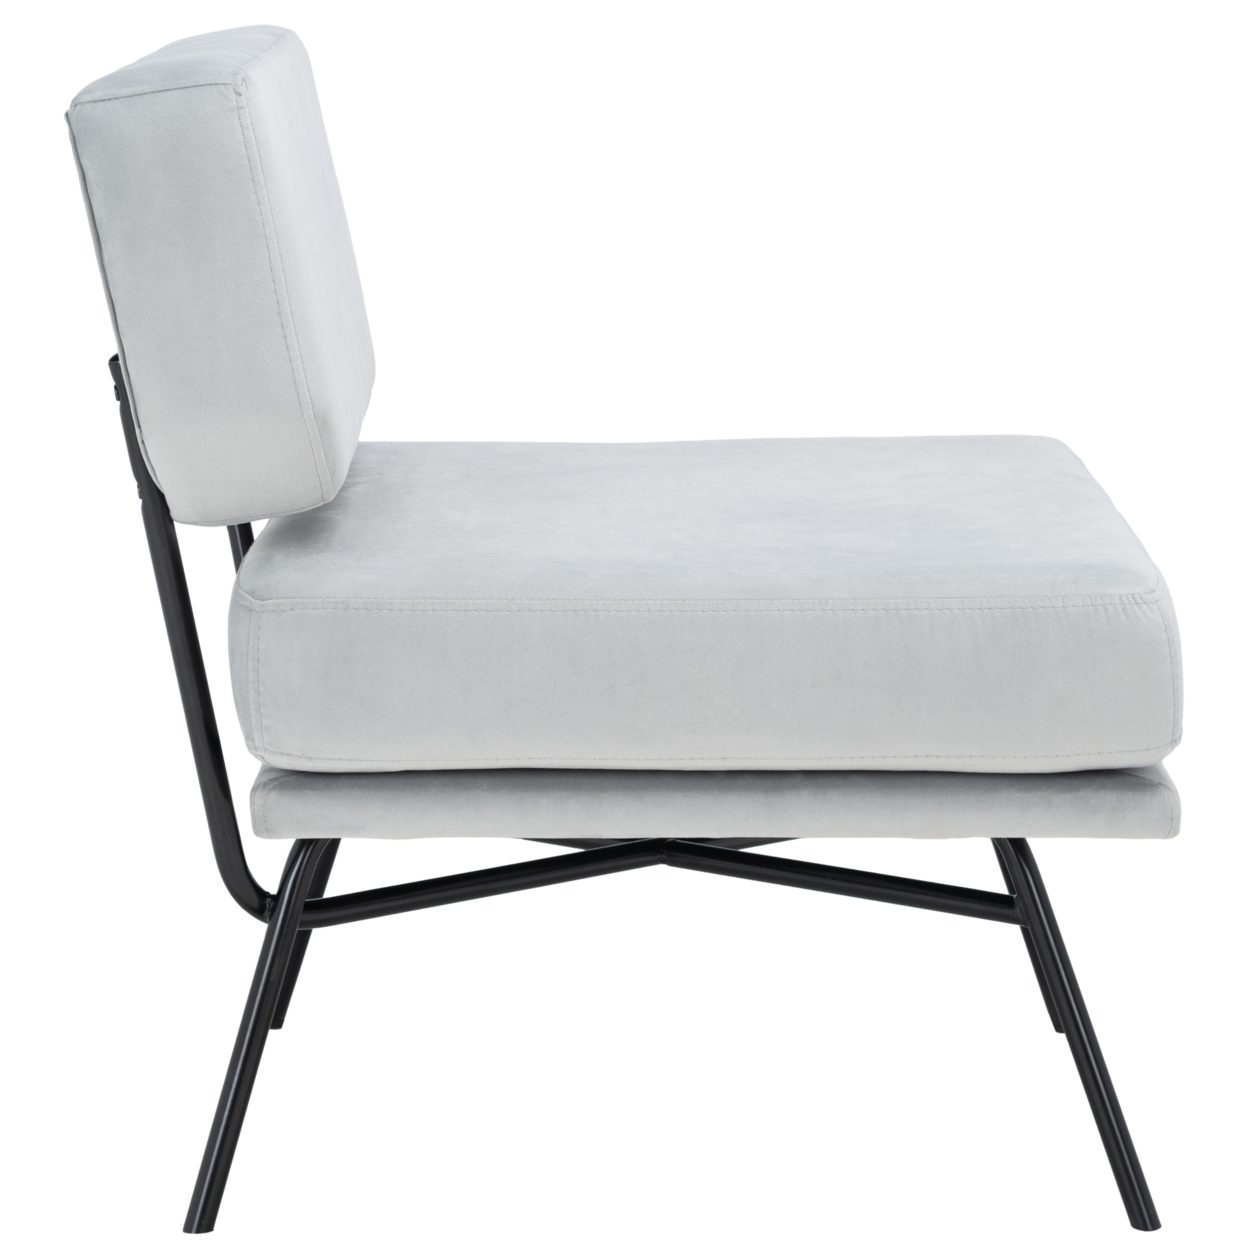 SAFAVIEH Kermit Accent Chair Grey / Black